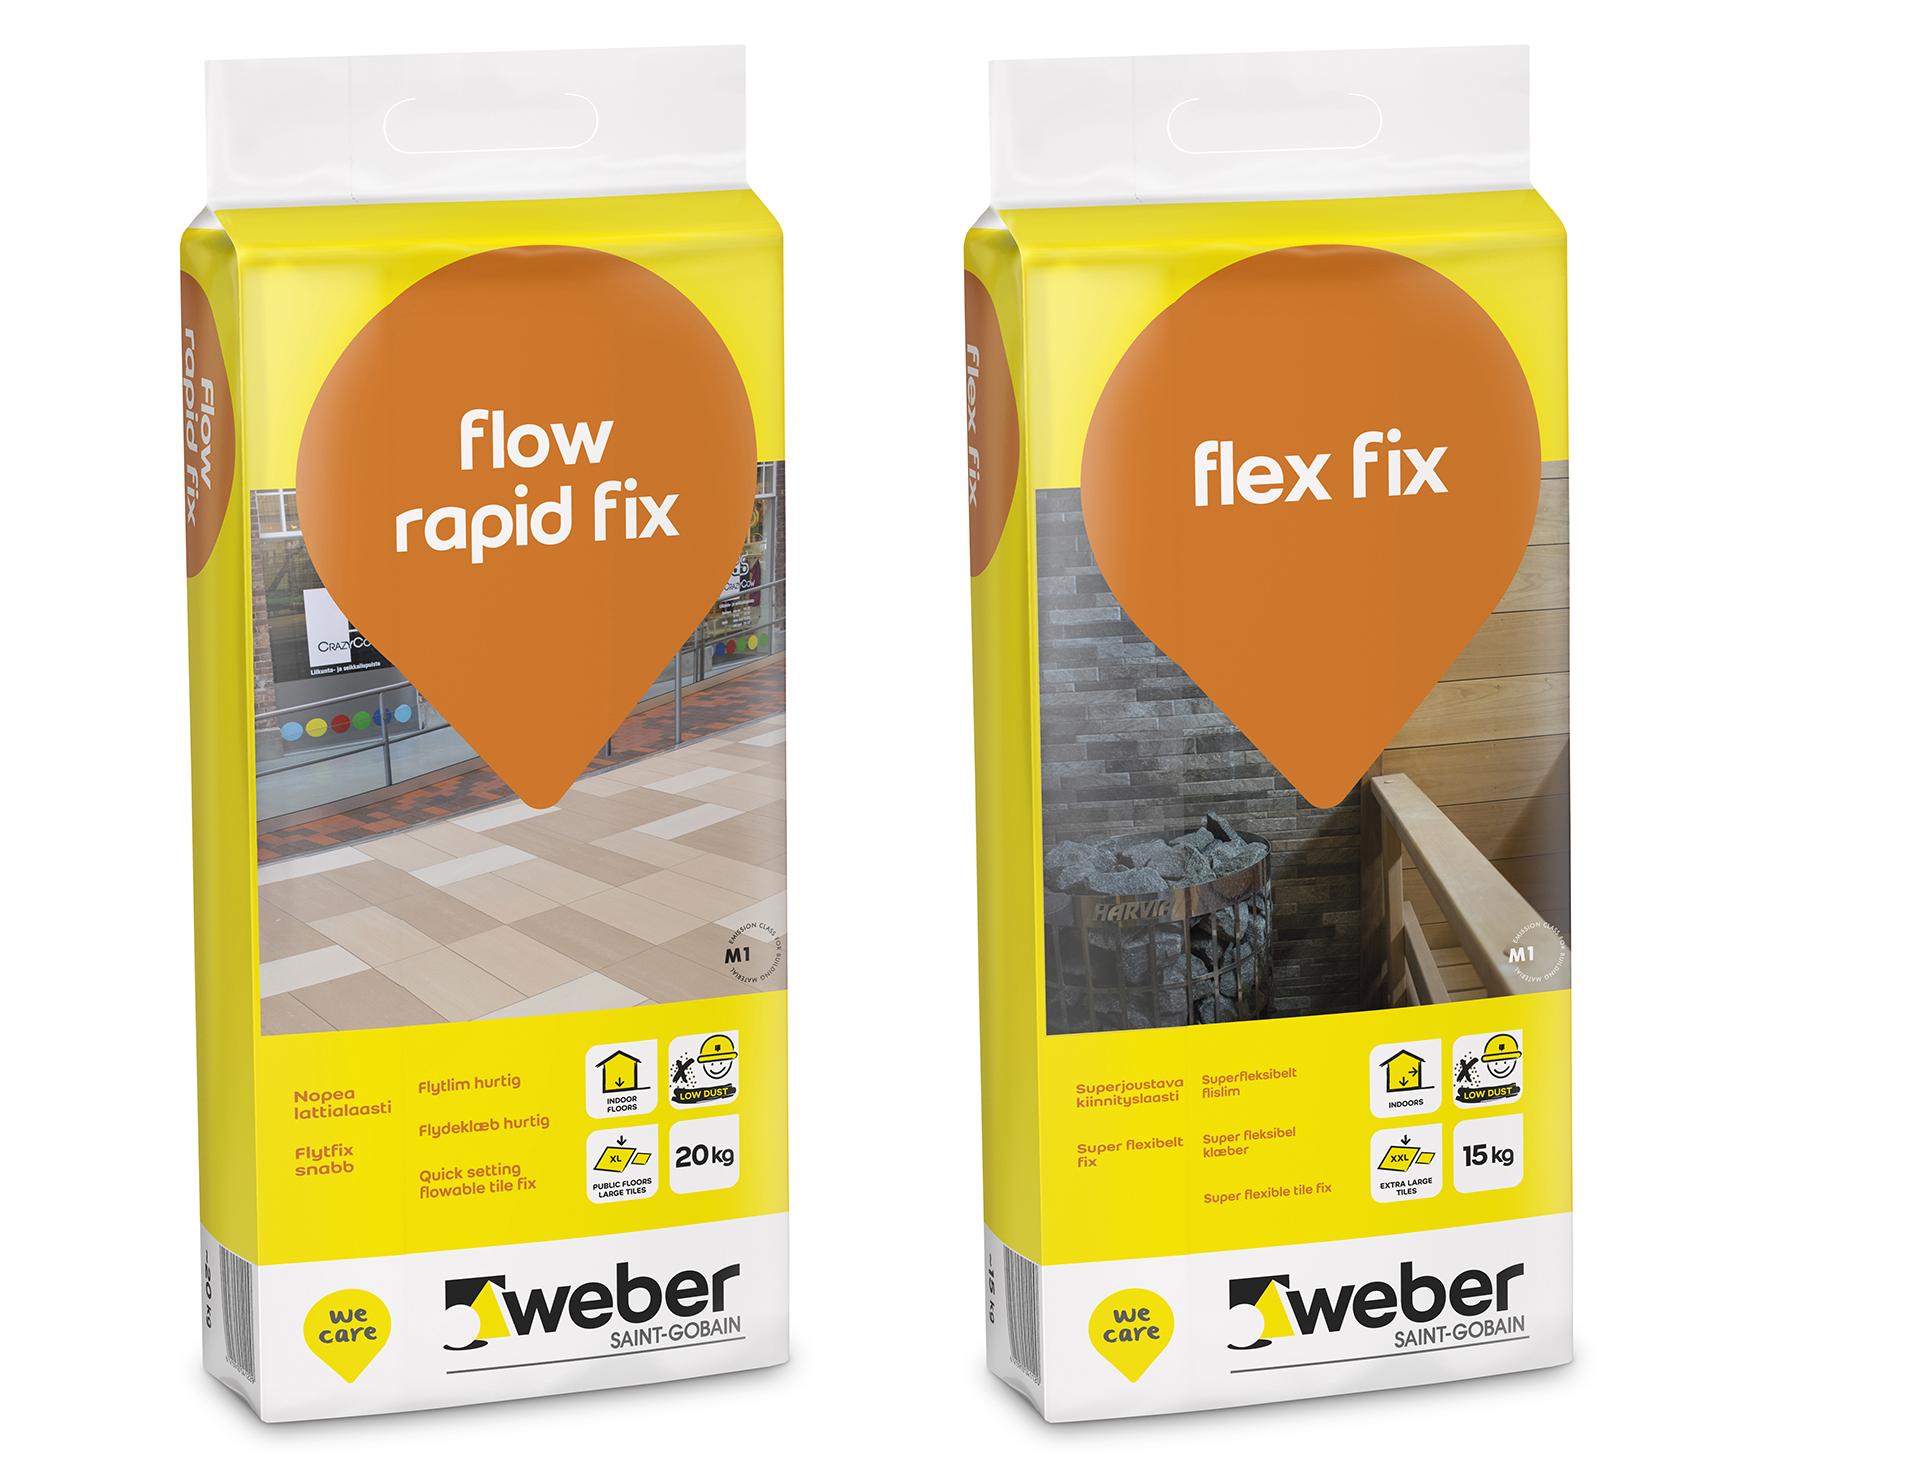 weber flow rapid fix isojen laattojen laatoitukseen, weber flex fix levyrakennelattioille, uusille betonialustoille, saunan seiniin ja kuorellisiin tulisijoihin